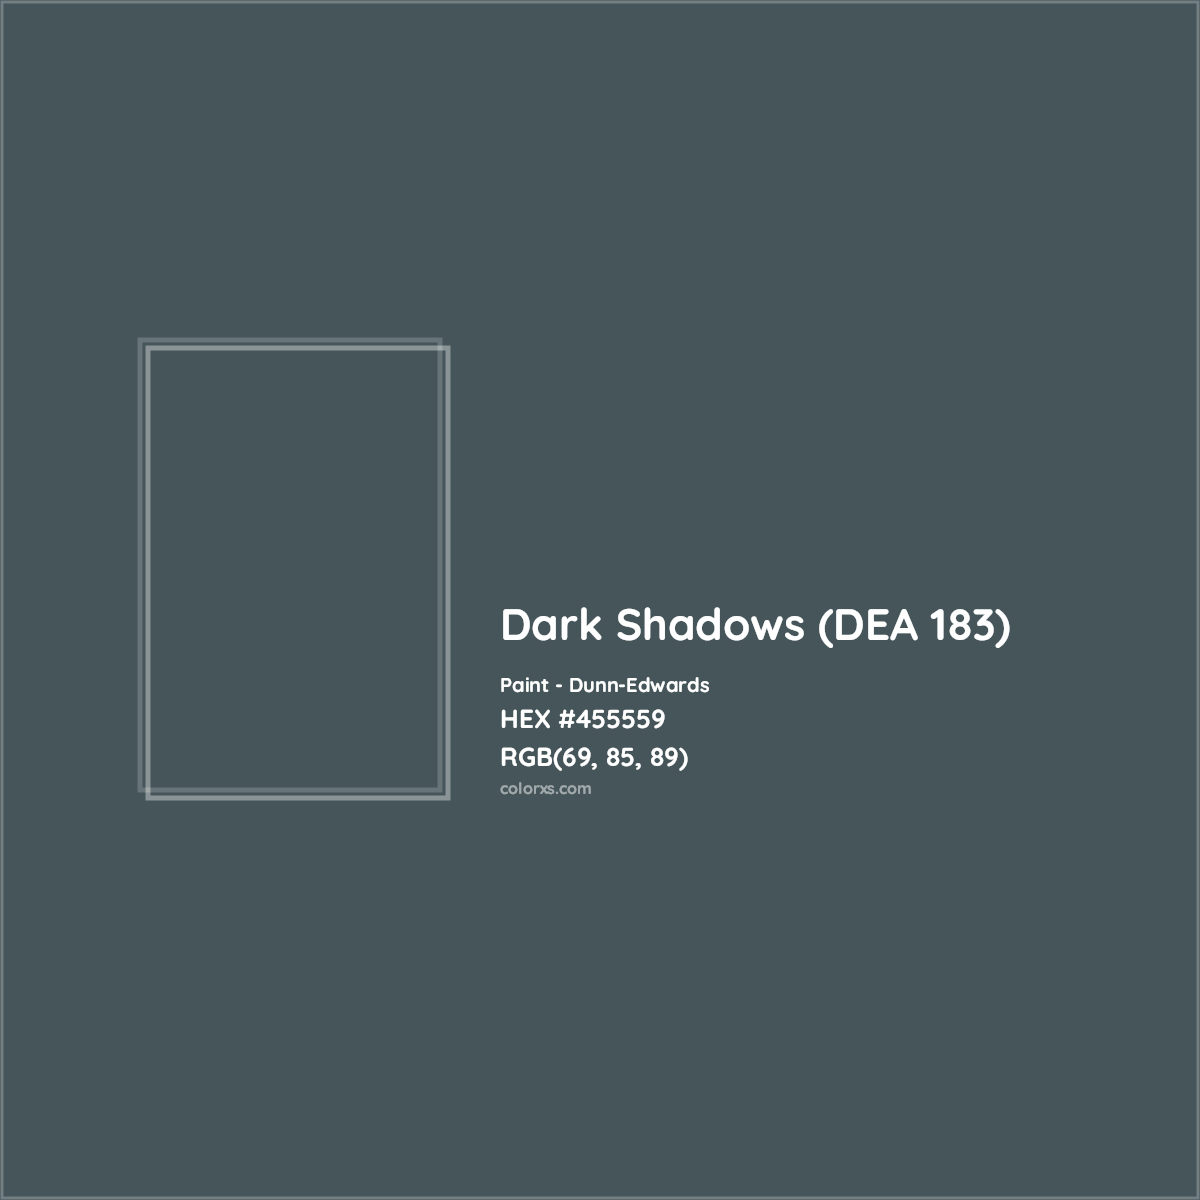 HEX #455559 Dark Shadows (DEA 183) Paint Dunn-Edwards - Color Code